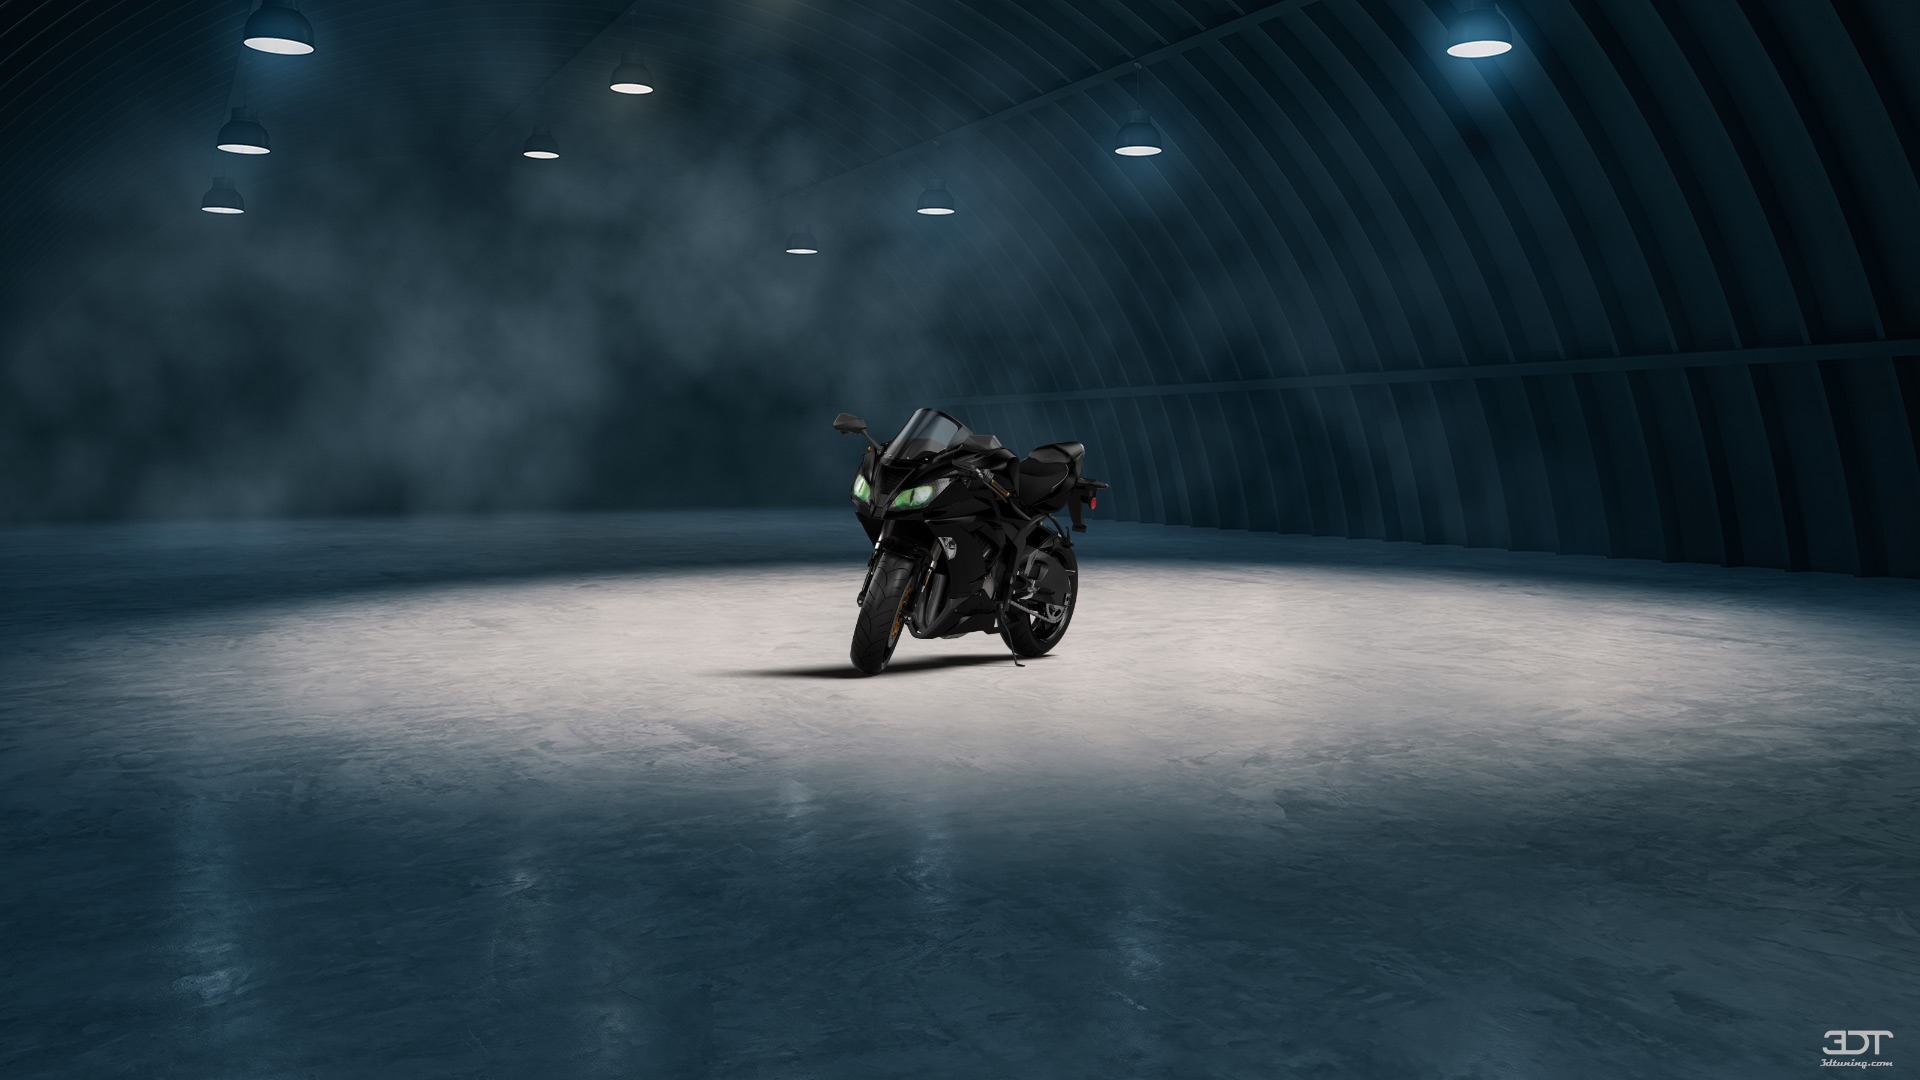 Kawasaki Ninja ZX 6R Sport Bike 2015